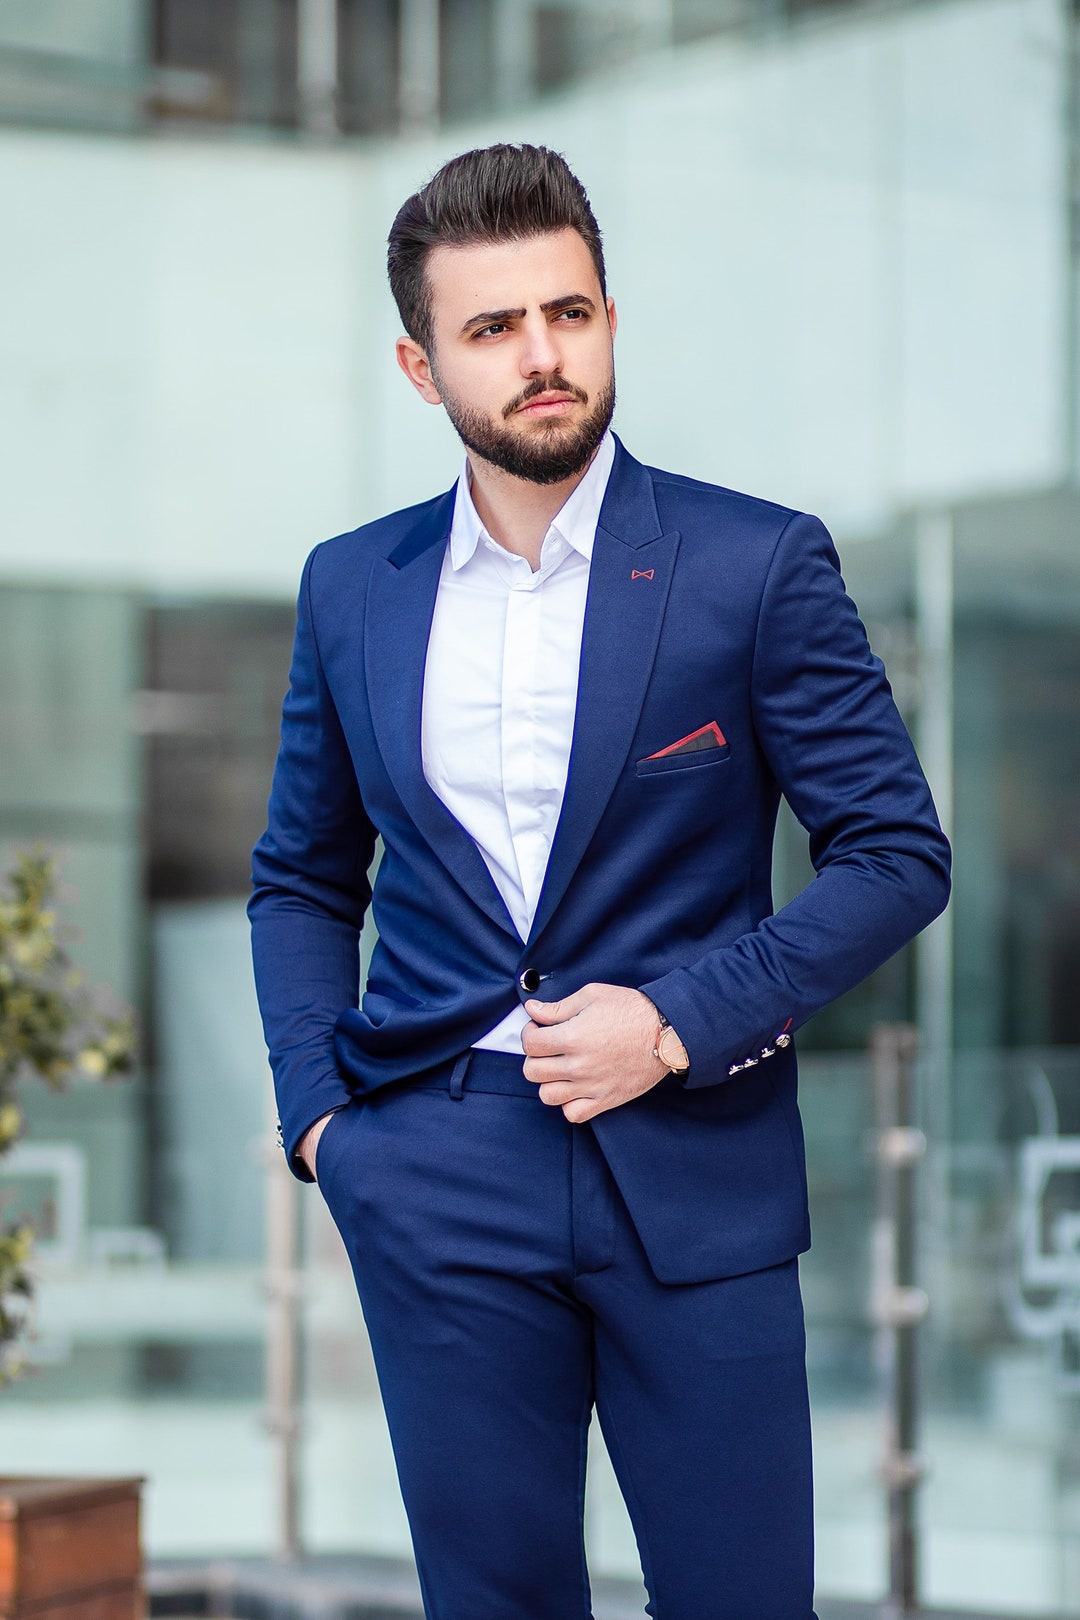 SUITS FOR MEN Men Wedding suits Blue Wedding Suits - Etsy 日本